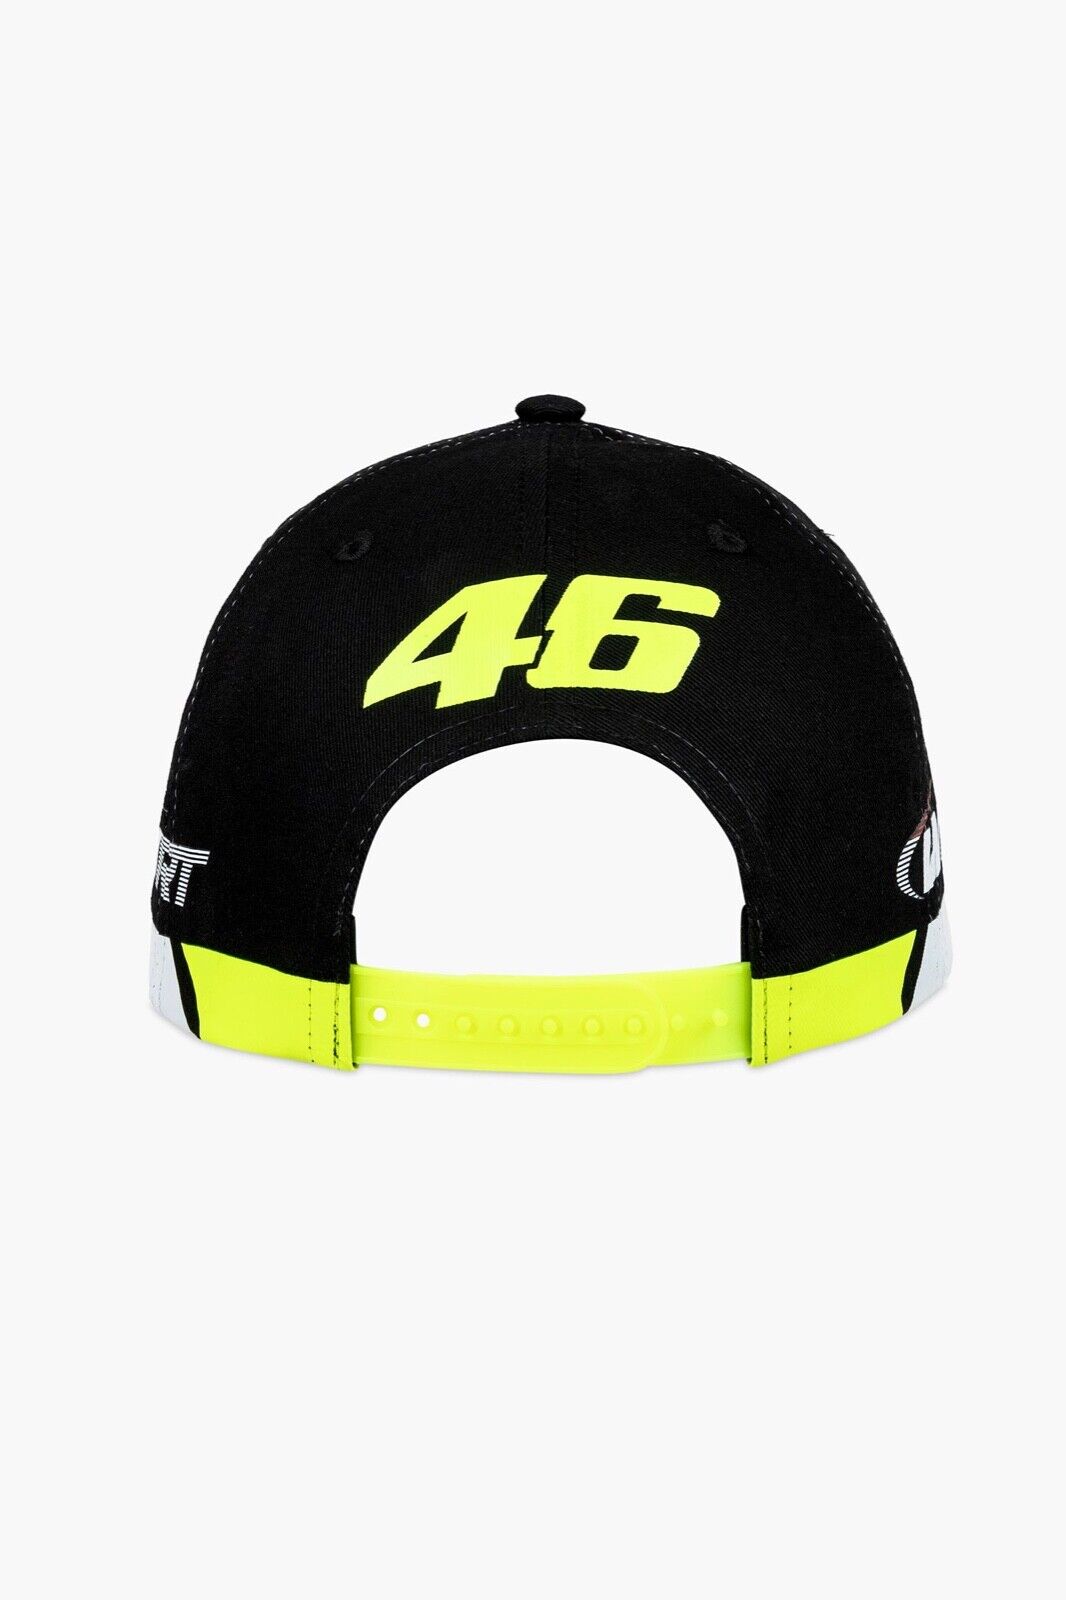 VR46 Official Valentino Rossi Wrt Monster Baseball Cap - Vamca 449403